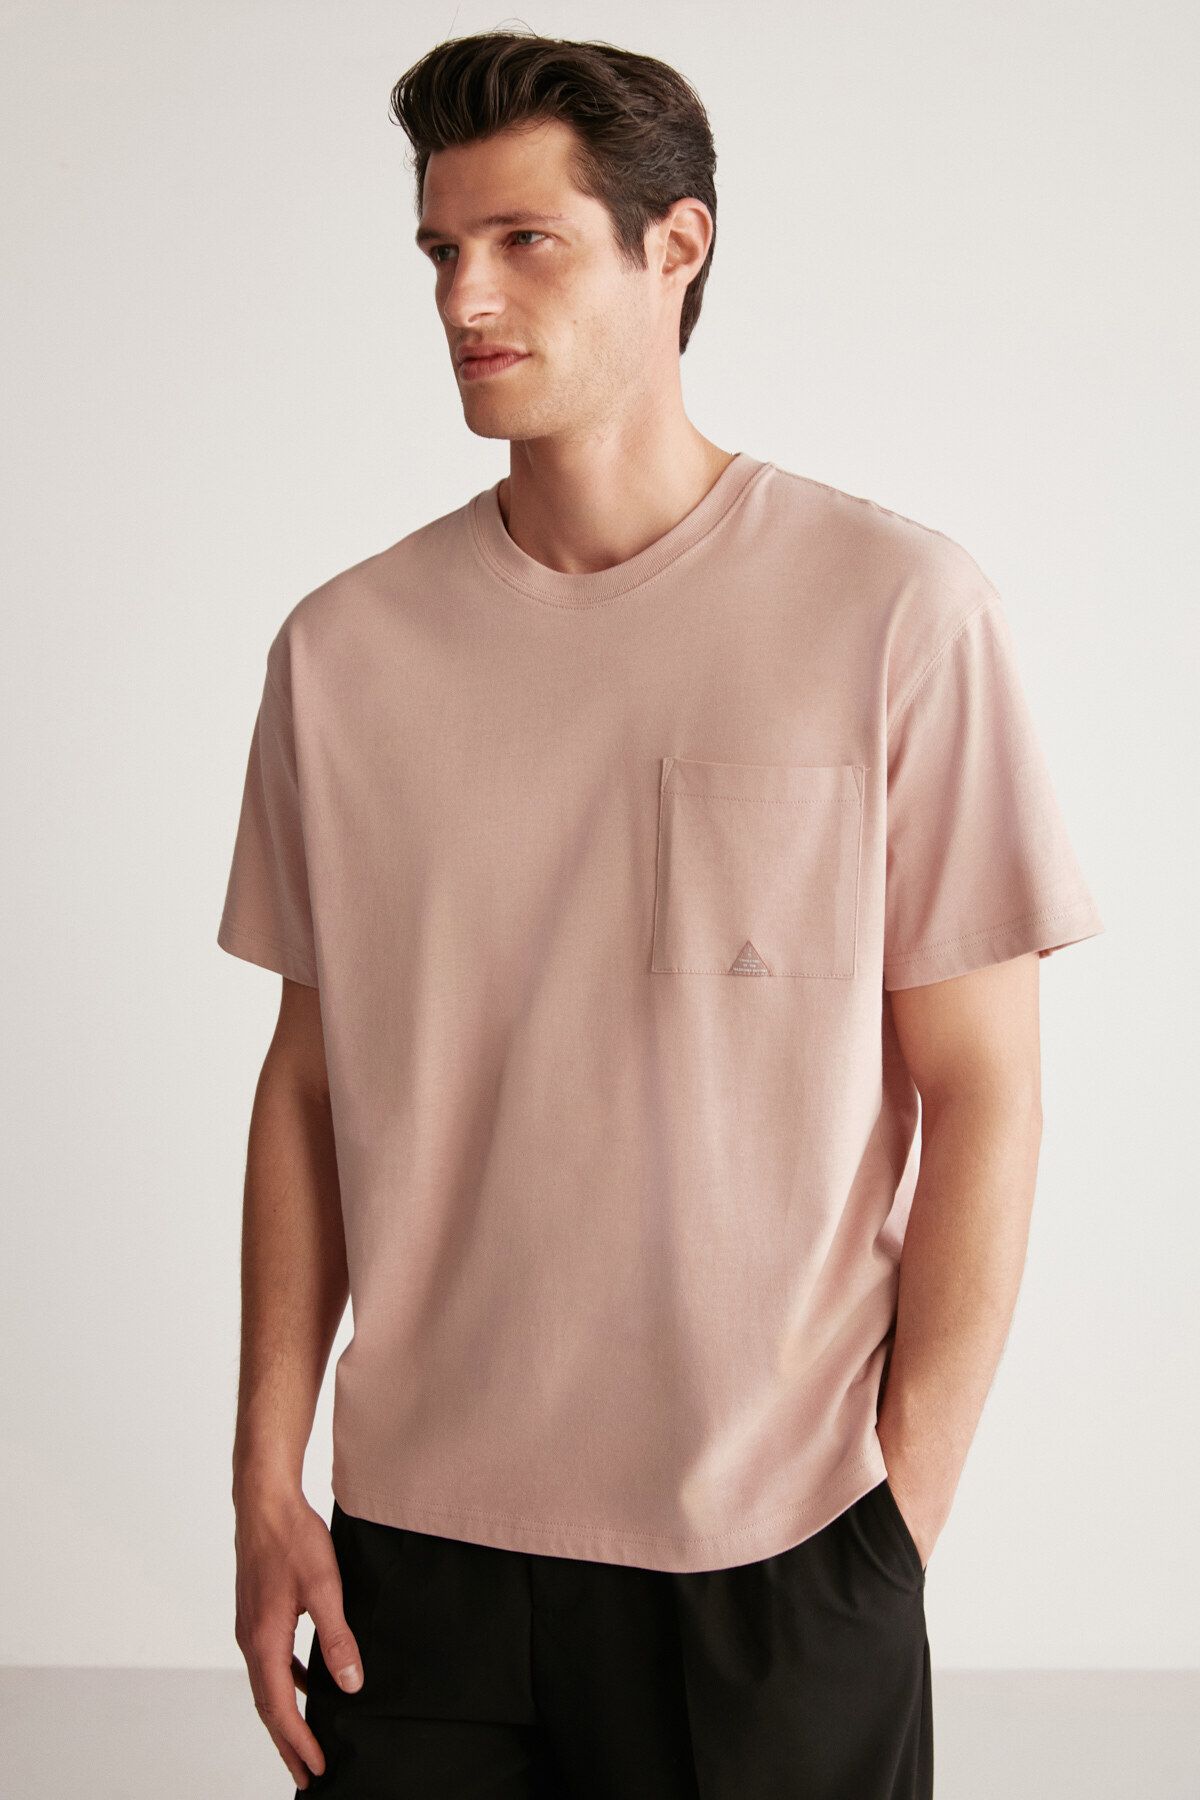 Louis Vuitton Erkek T-Shirt Modelleri, Fiyatları - Trendyol